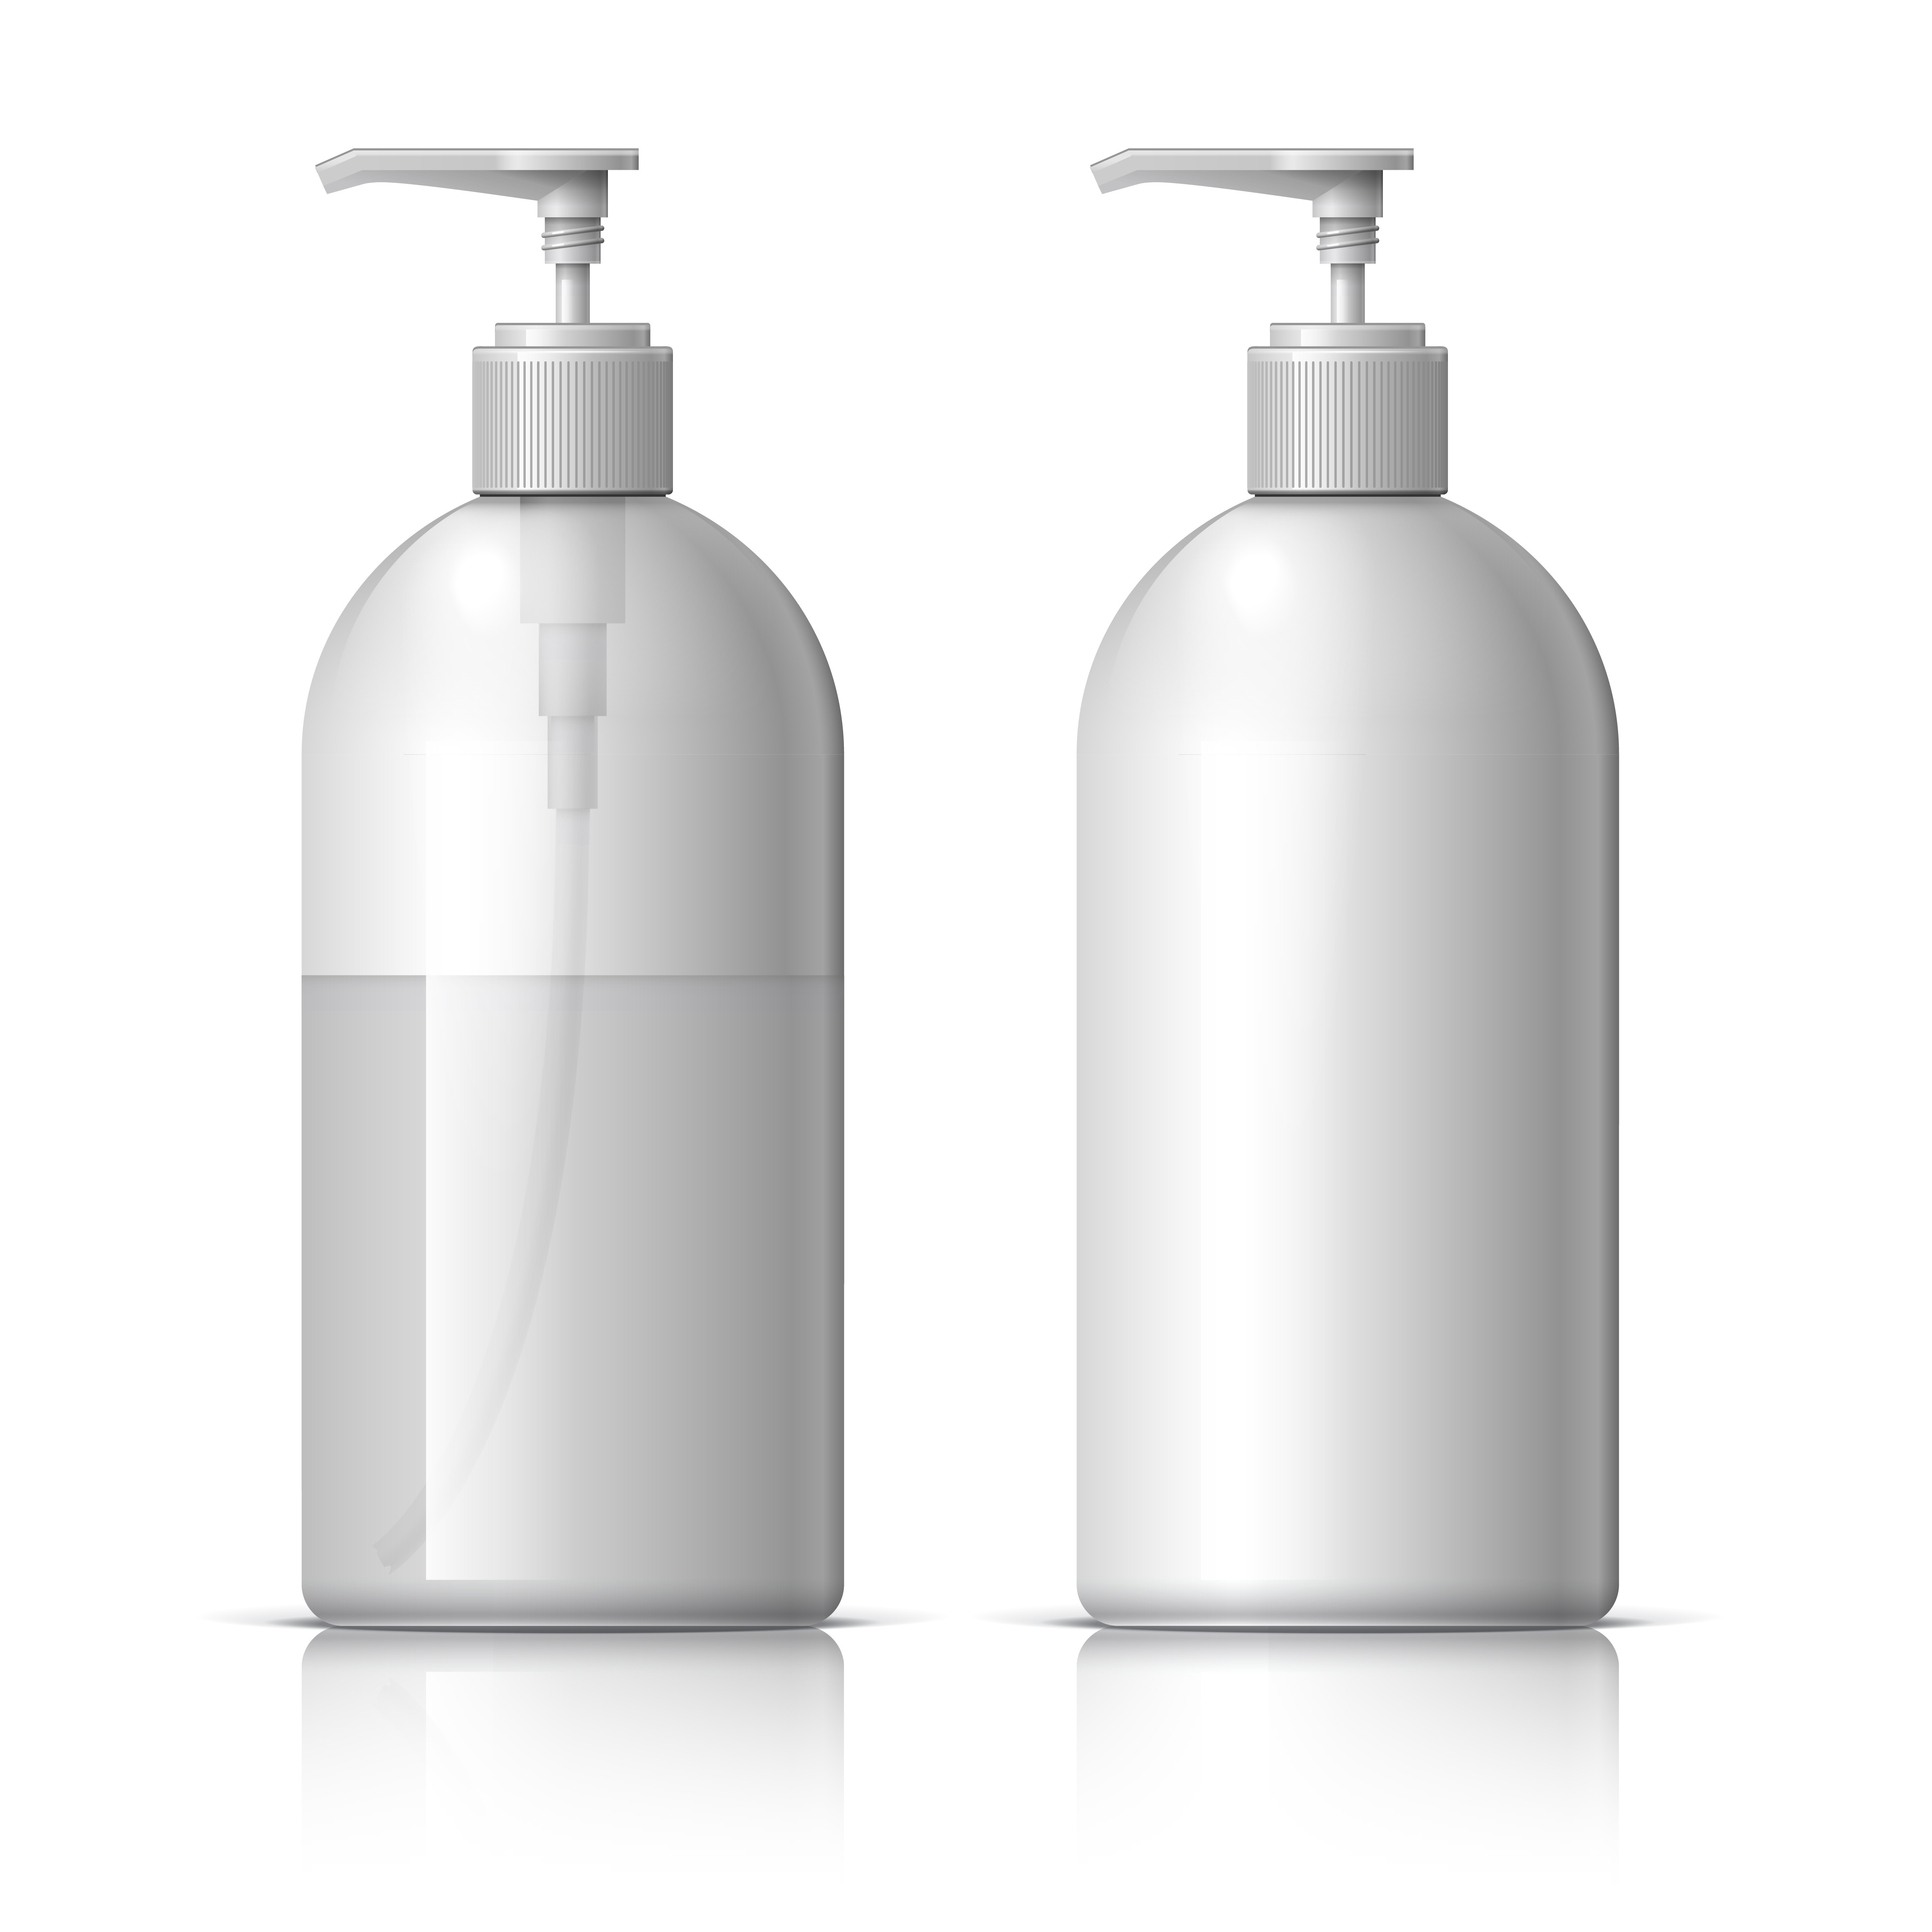 Bouteilles de shampooing cosmétique et maquette de lavage corporel